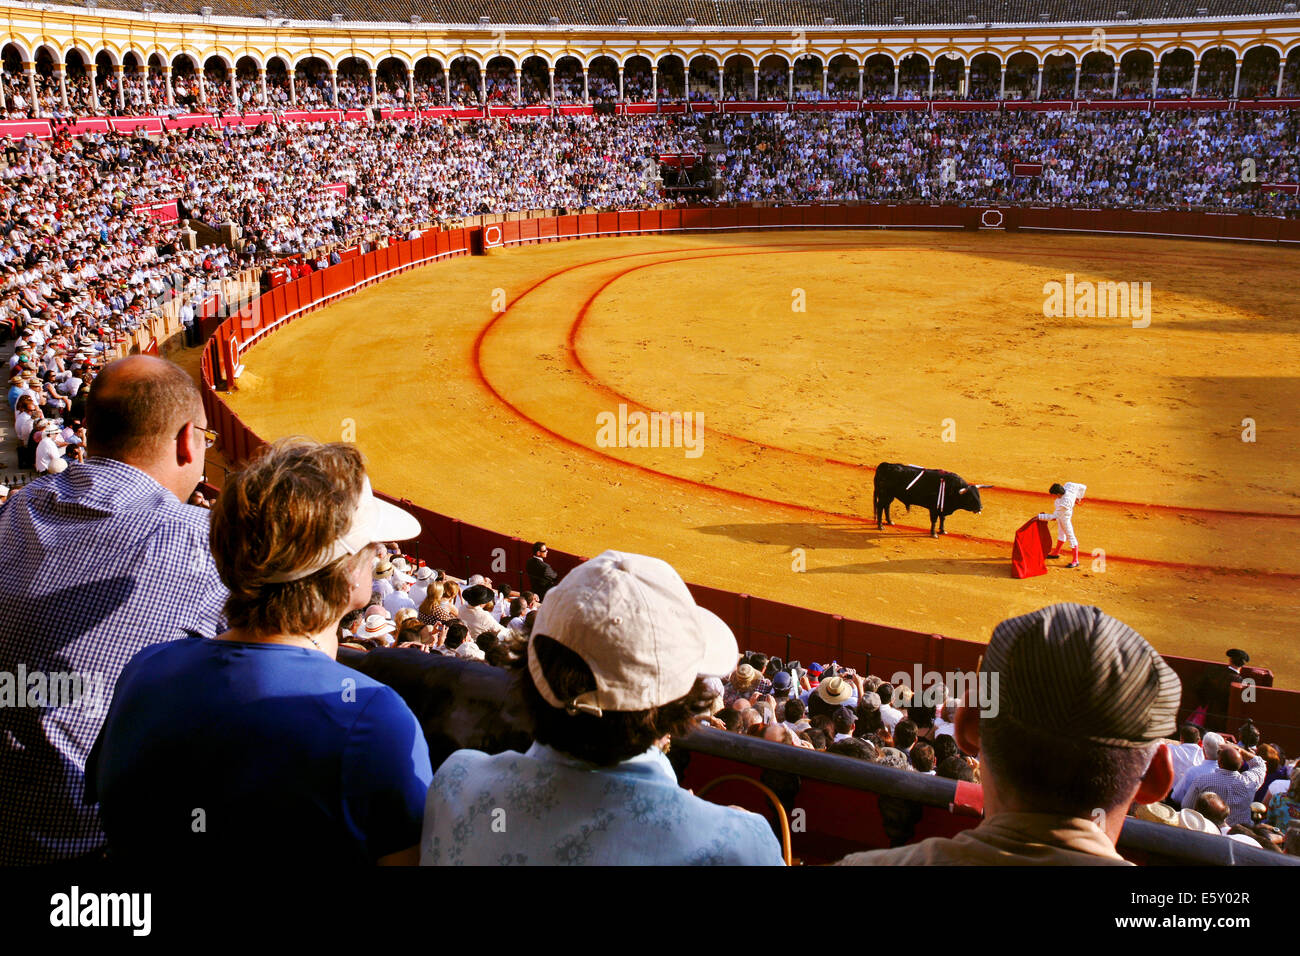 Bullfight during Feria de Abril Seville Fair, Plaza de toros de la Real Maestranza de Caballería de Sevilla Bullring, Seville, Spain Stock Photo